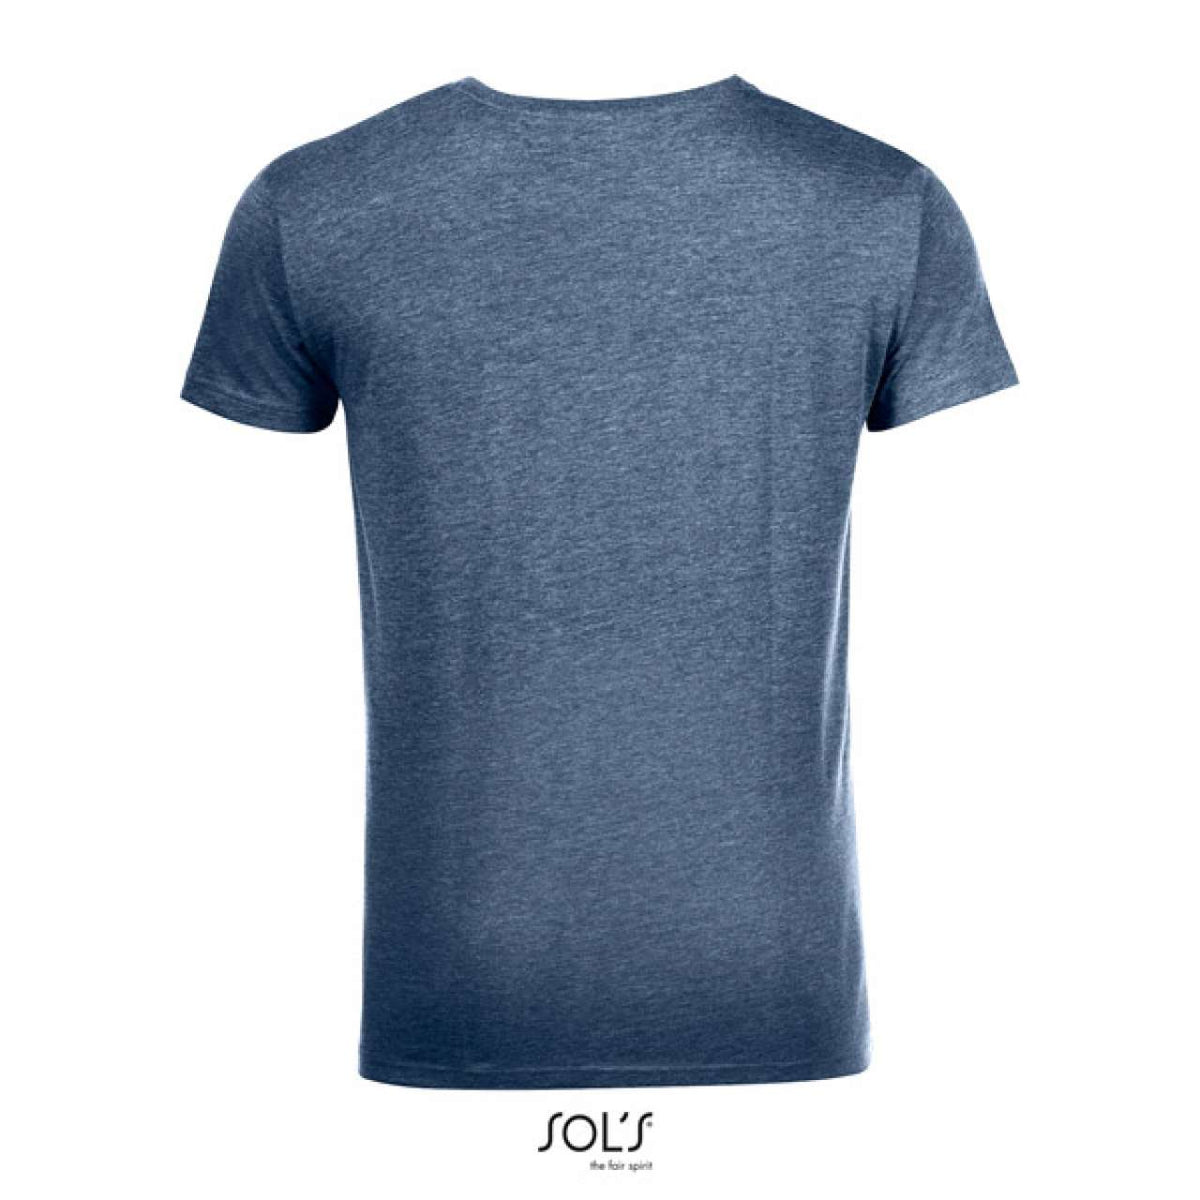 SOL'S Herren T-Shirt Rundhals Oberteil Shirt Basic Baumwolle Kurzarm